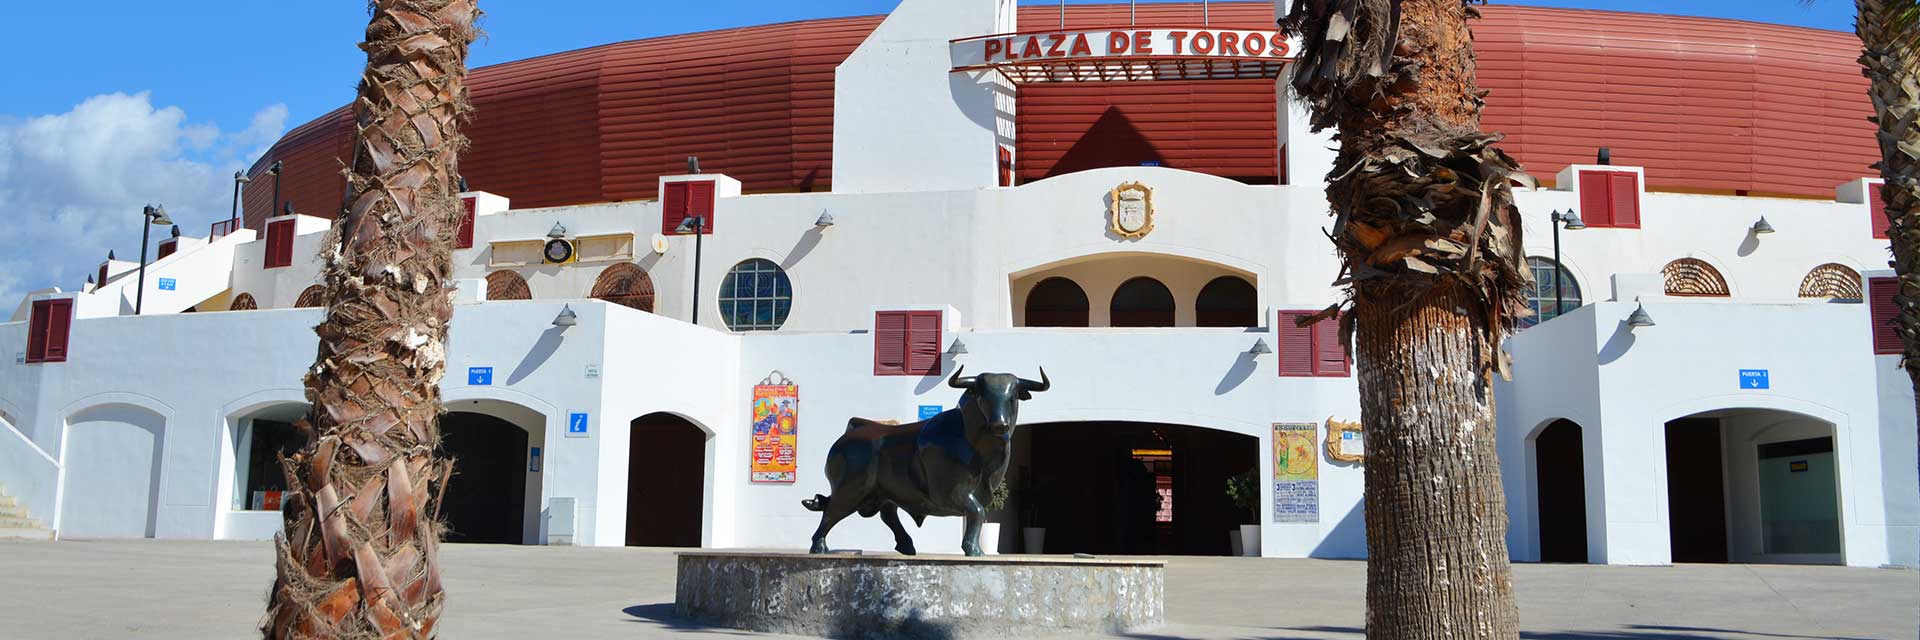 Plaza de toros de Roquetas de Mar Almería